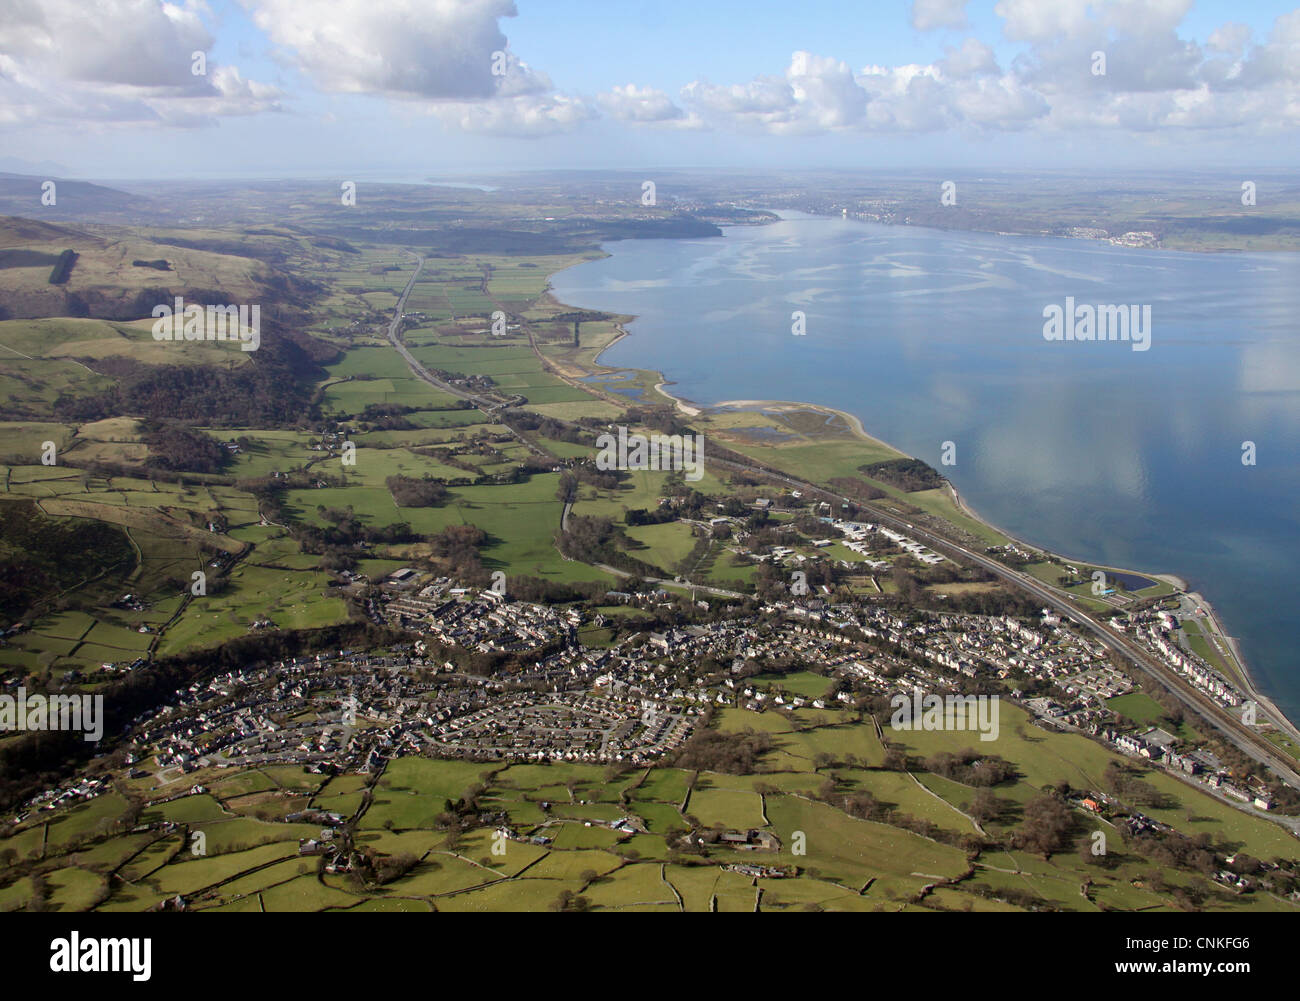 aerial view of Llanfairfechan in North Wales Stock Photo